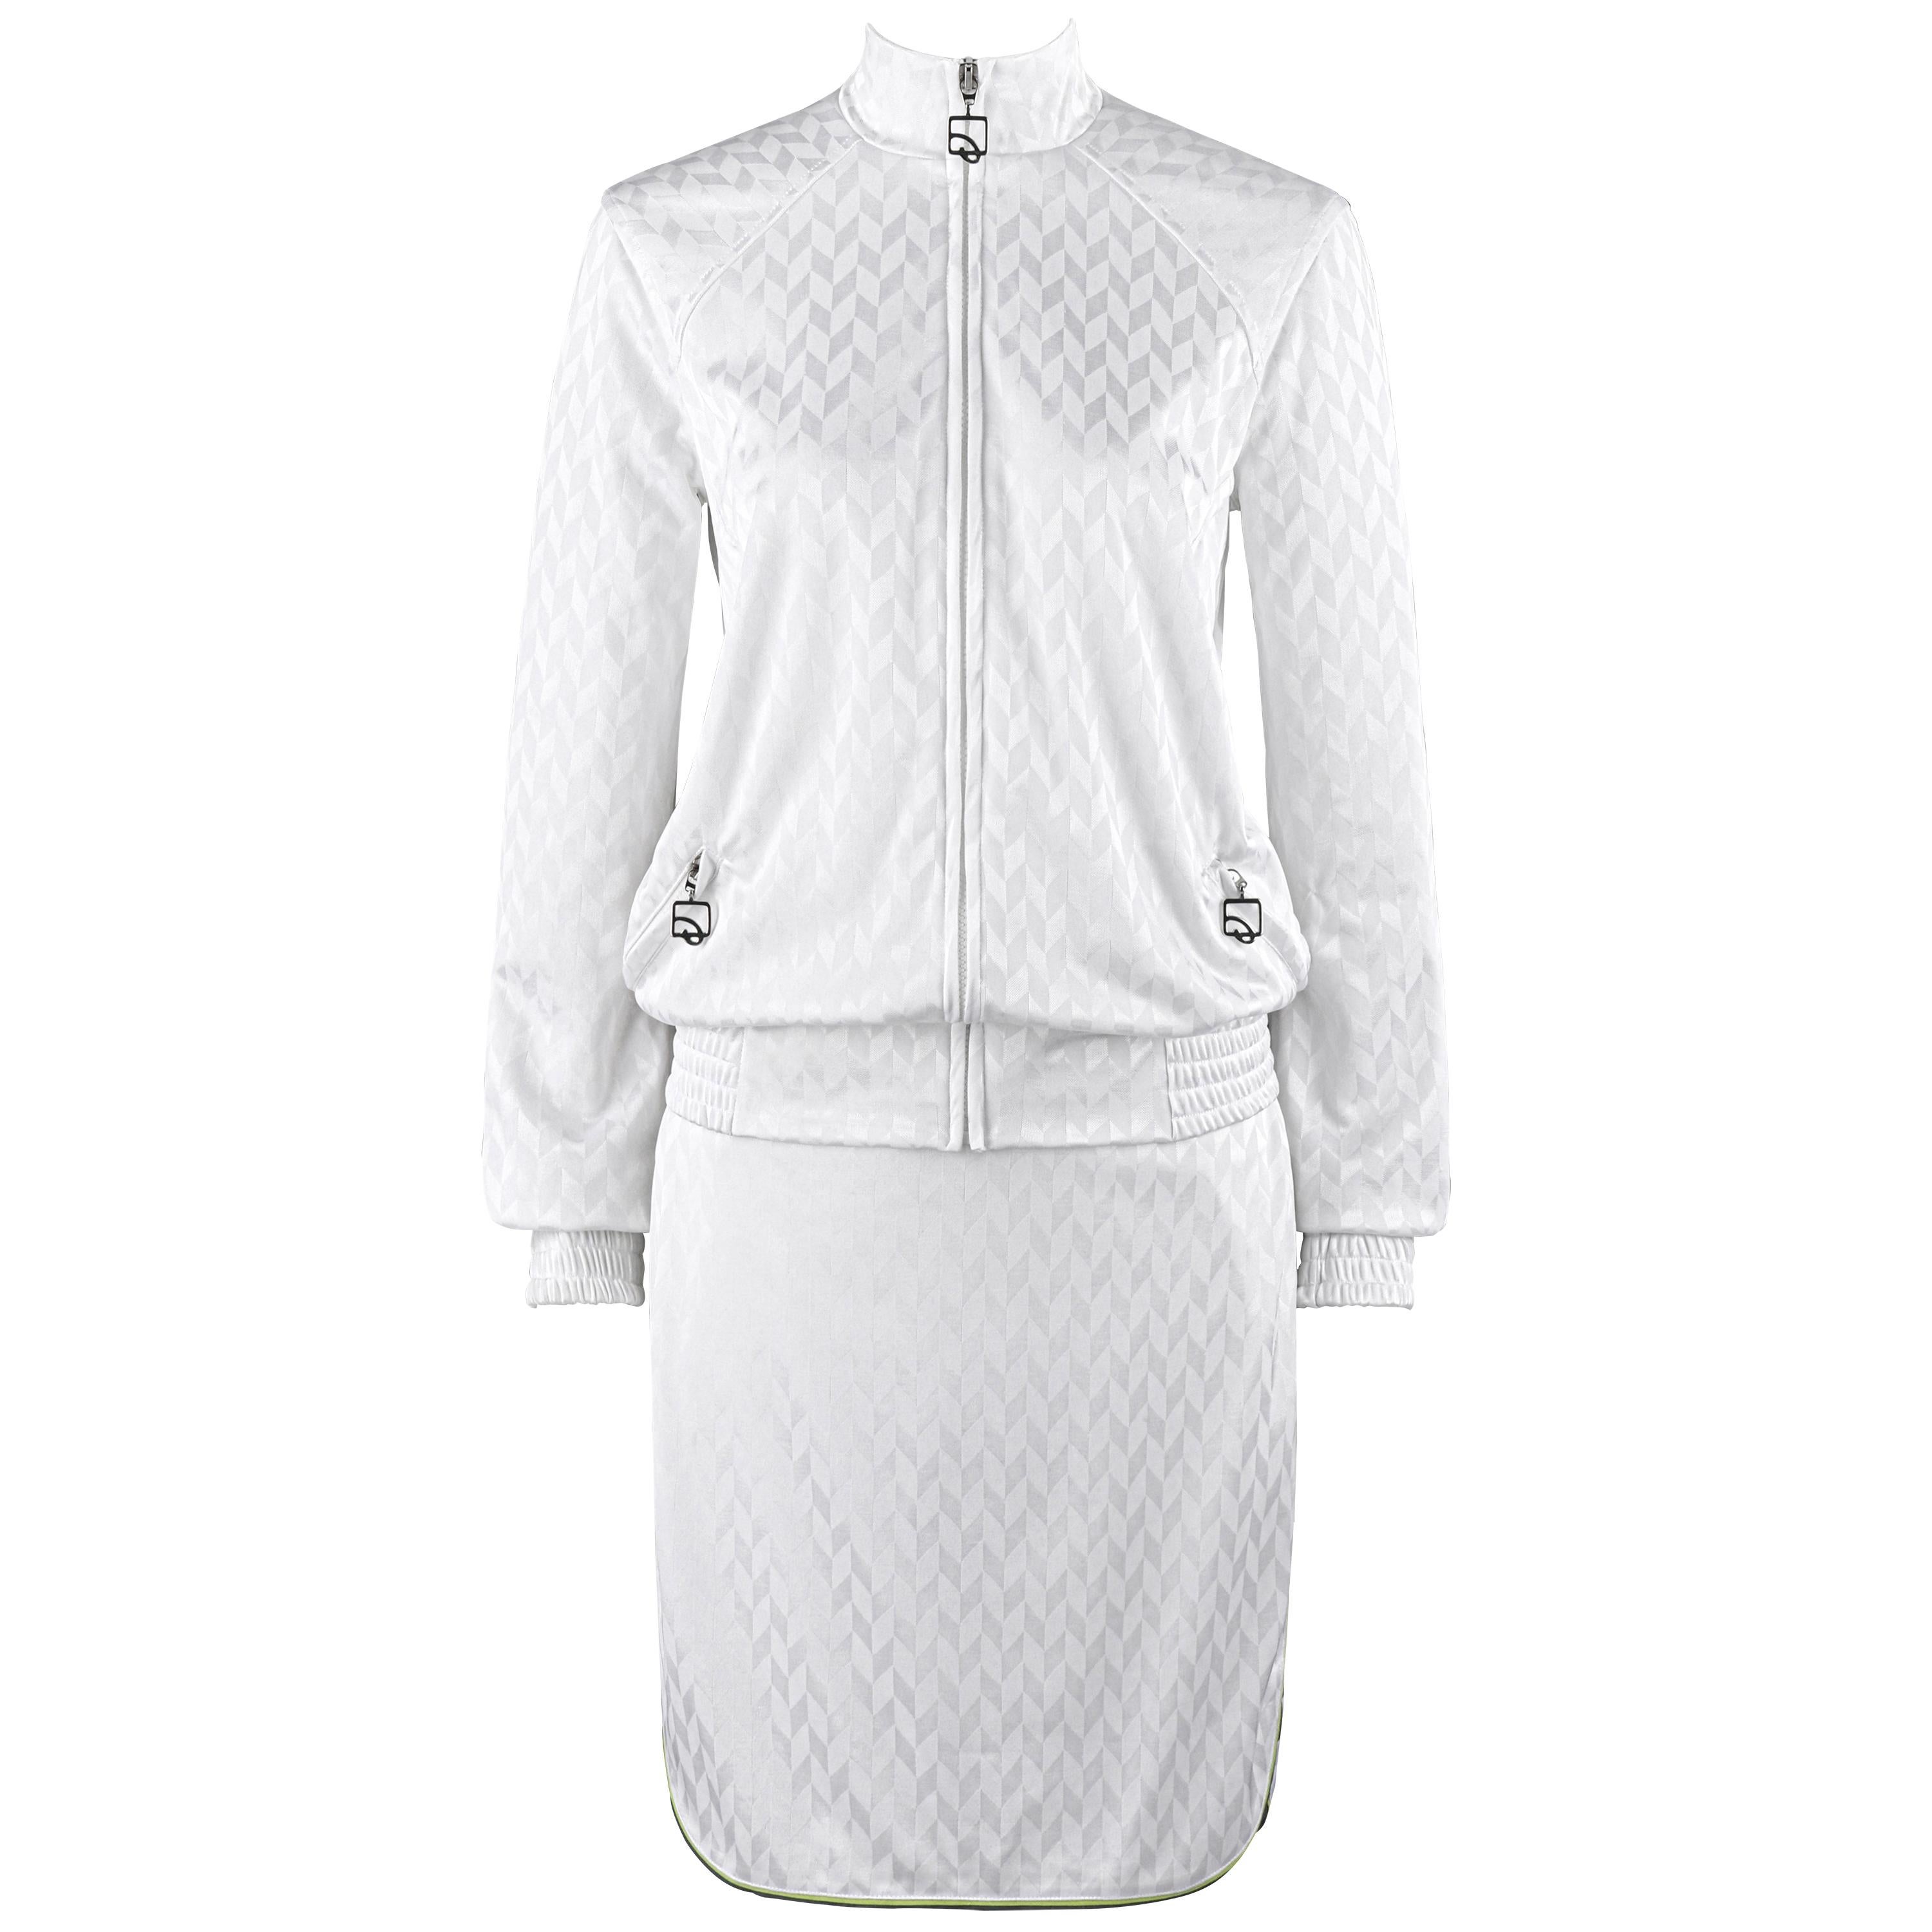 ALEXANDER McQUEEN S/S 2000 "Eye" 2pc White Herringbone Athletic Skirt Set NWT For Sale